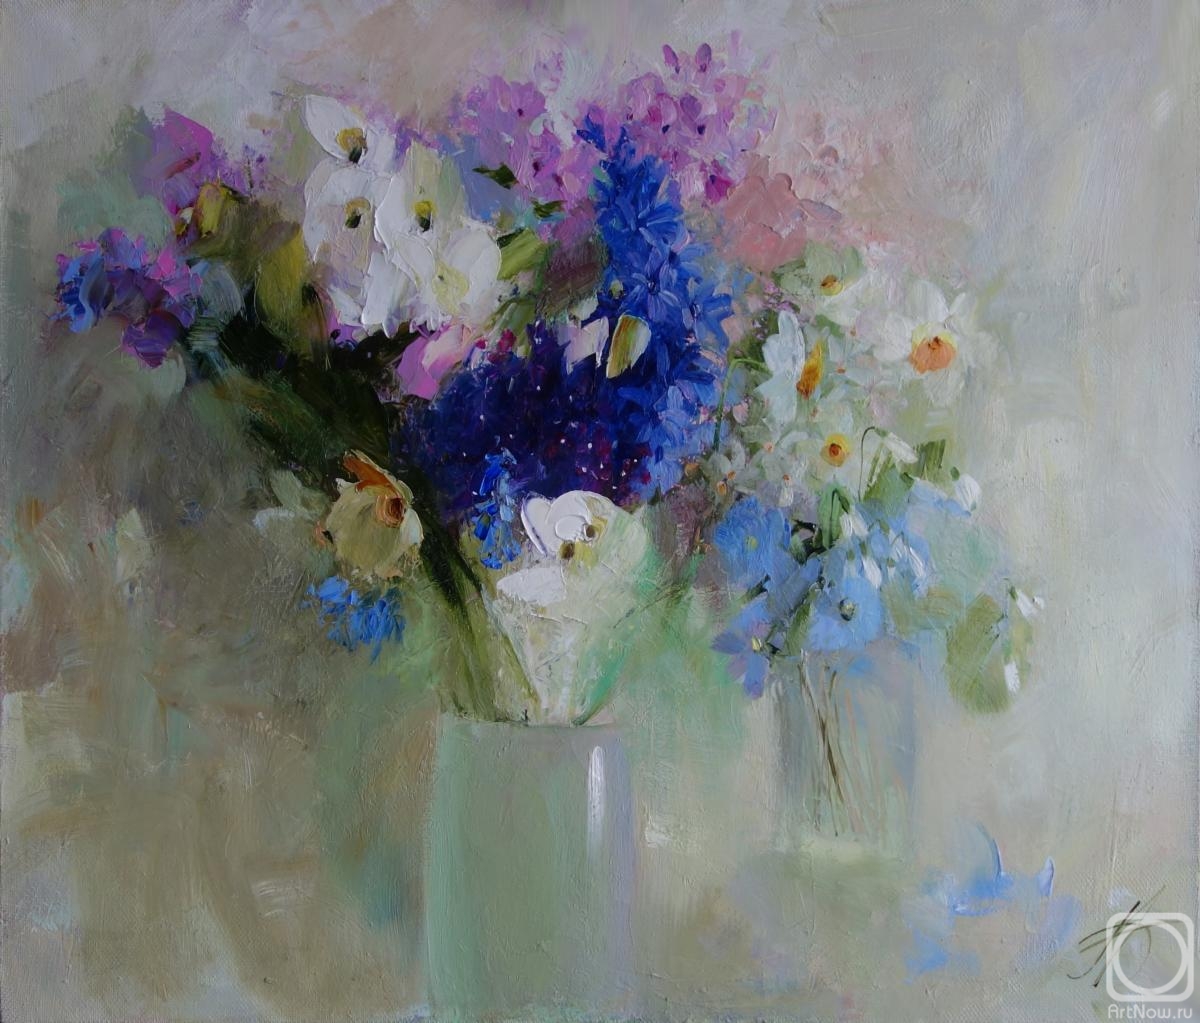 Anisimova Galina. Series "I love flowers". Spring